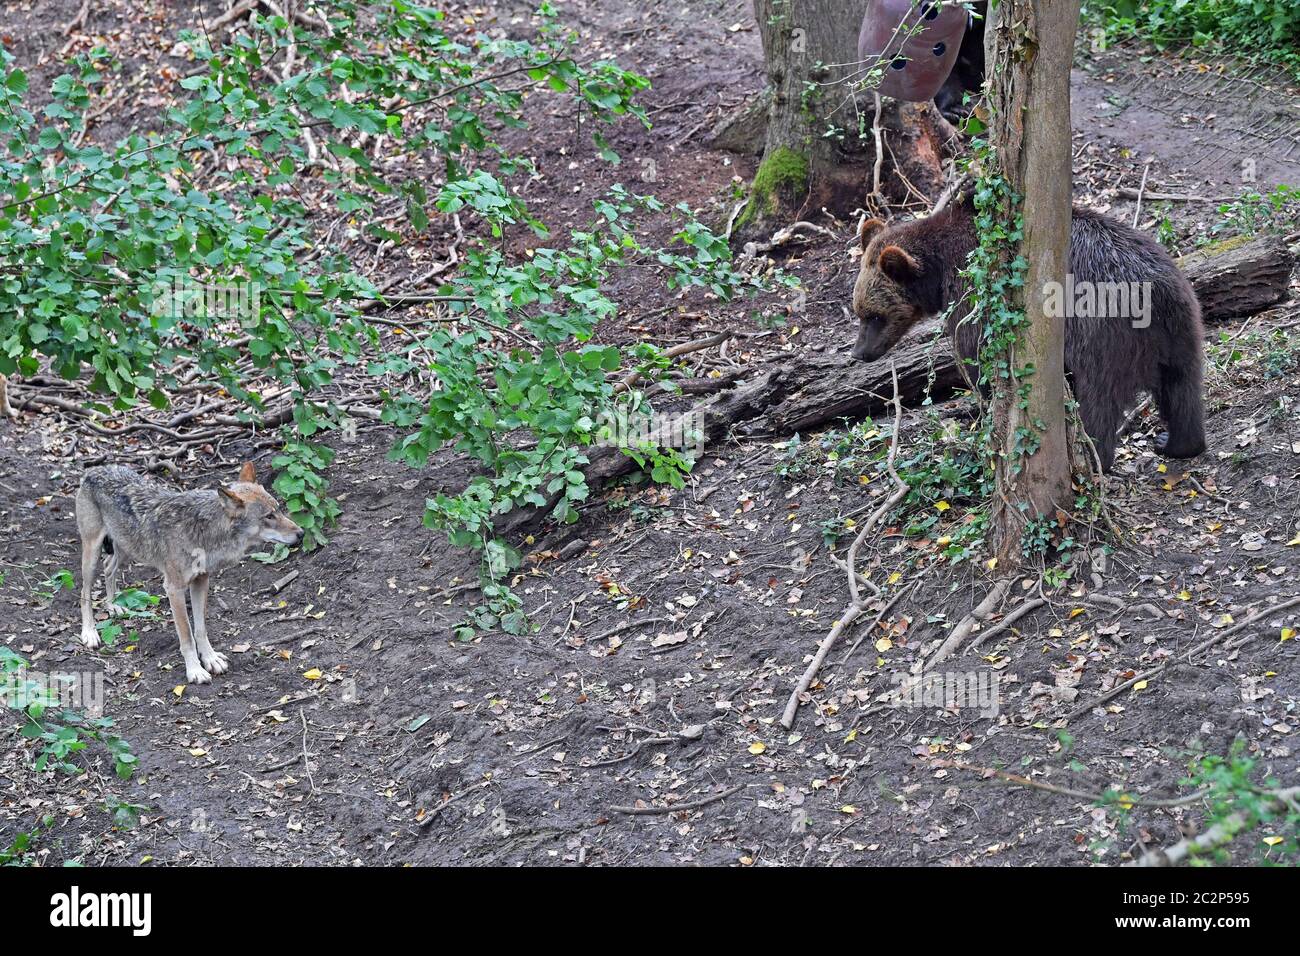 Vier europäische Braunbären und fünf graue Wölfe, die erstmals in Bear Wood, einem neuen Gehege im Wild Place-Projekt des Bristol Zoos, in britischen Wäldern zusammenleben. Stockfoto